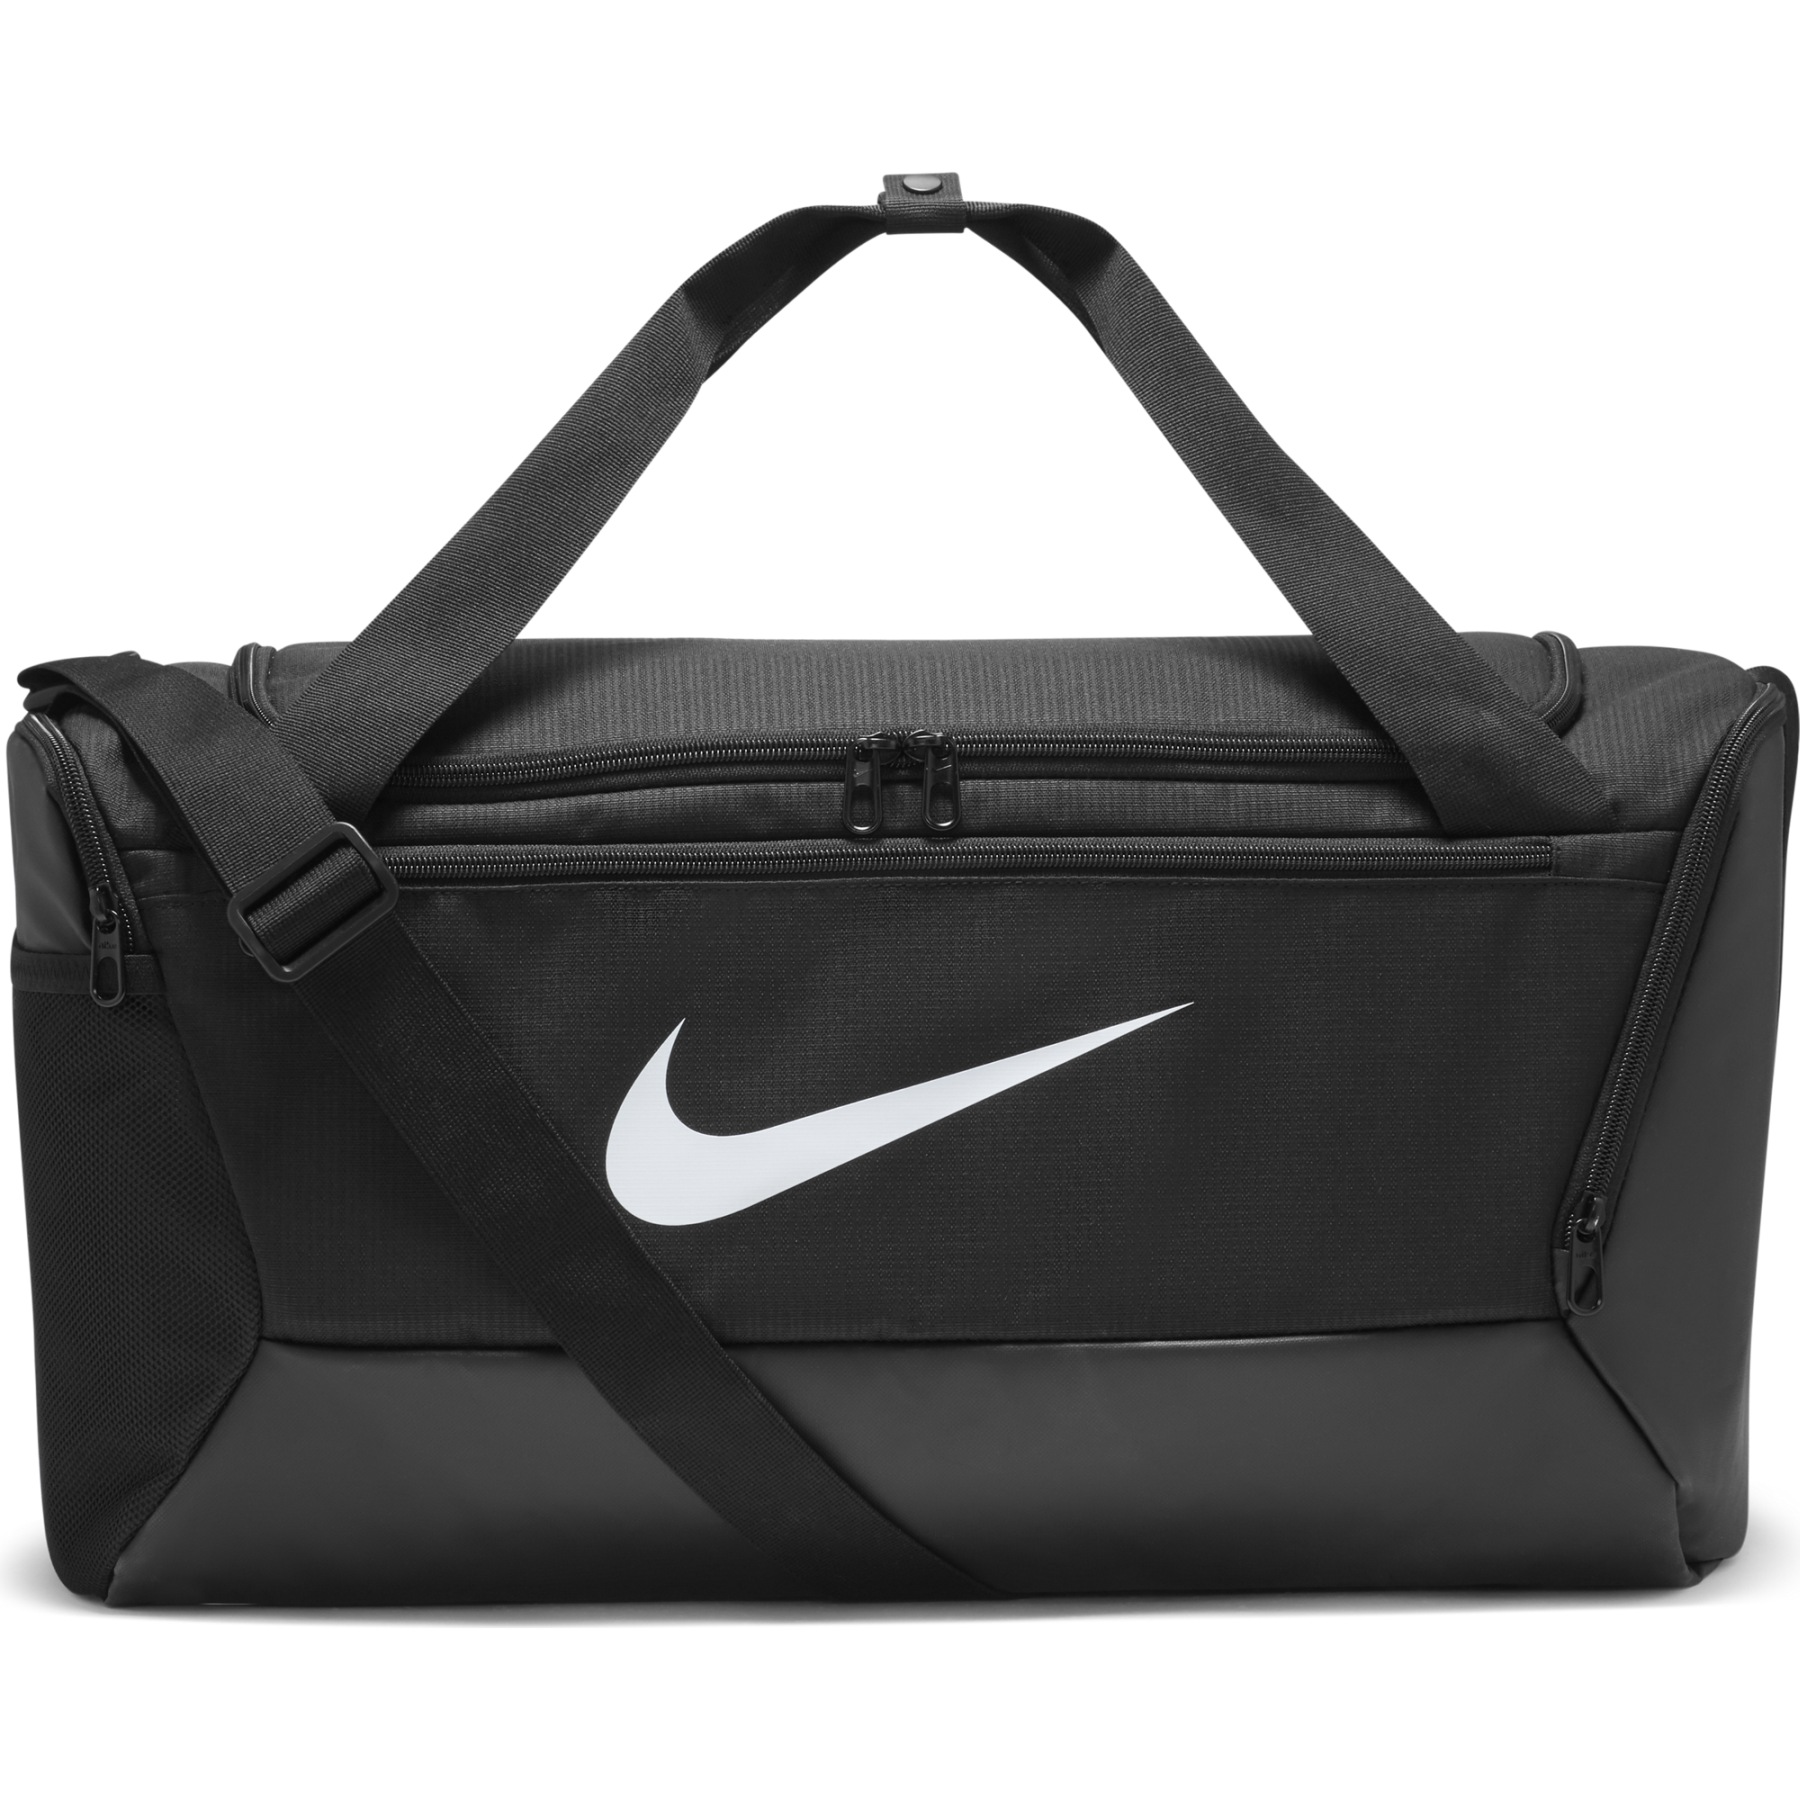 Produktbild von Nike Brasilia 9.5 Sporttasche 41L (Klein) - schwarz/schwarz/weiss DM3976-010